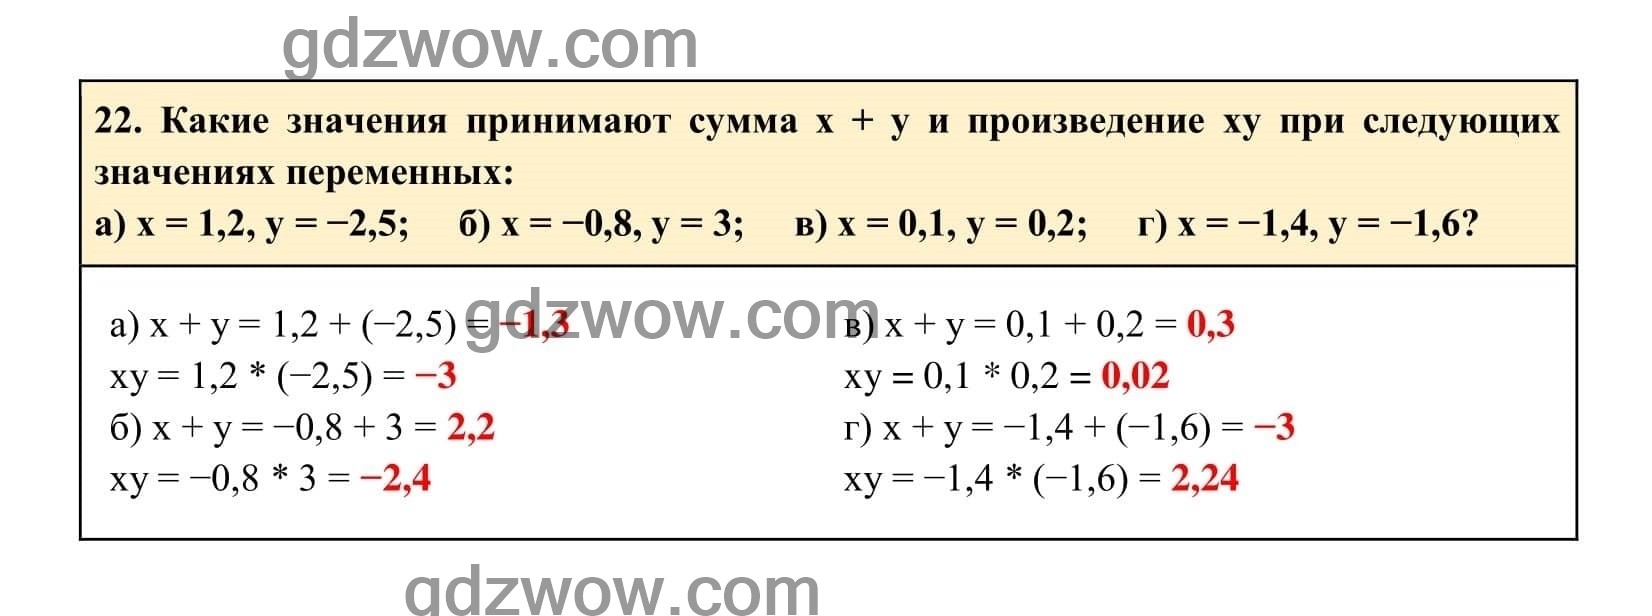 Упражнение 22 - ГДЗ по Алгебре 7 класс Учебник Макарычев (решебник) - GDZwow